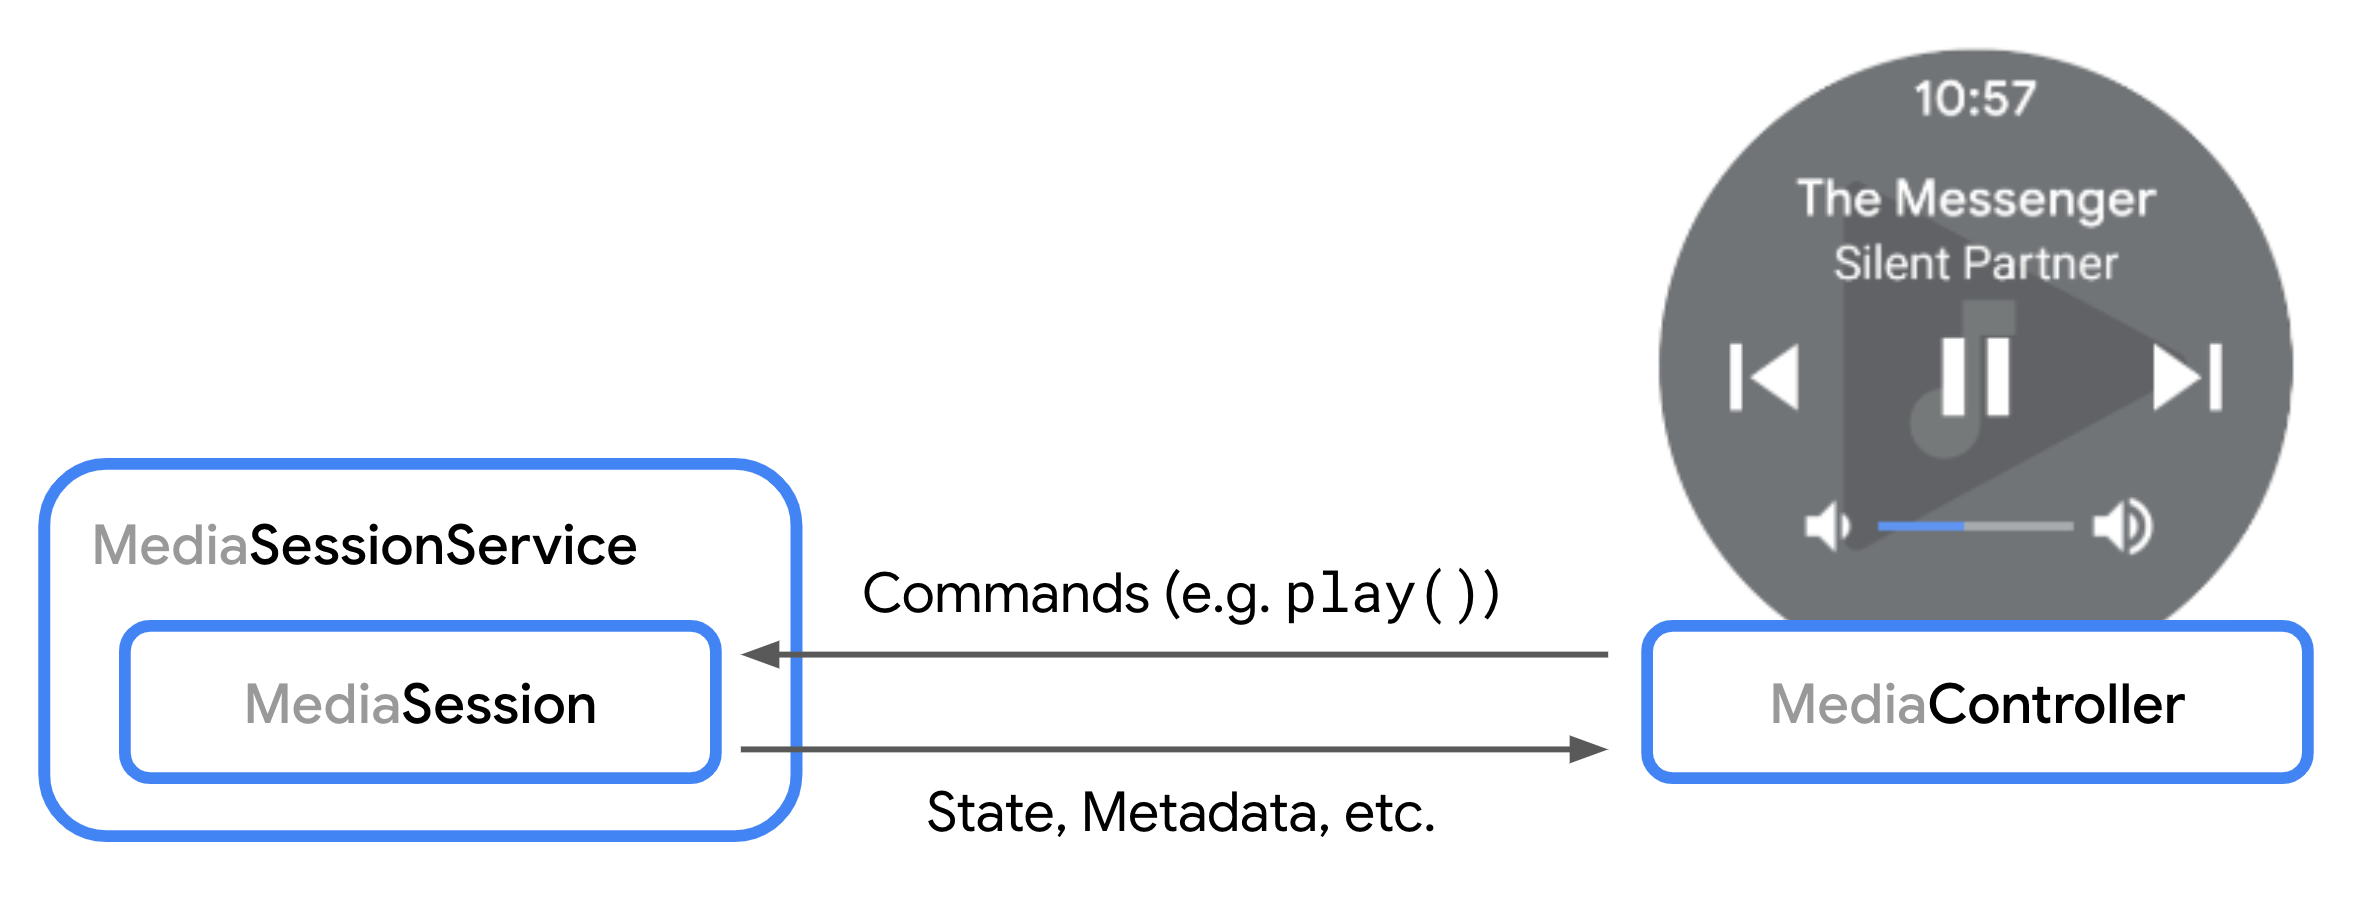 رسم بياني يوضِّح التفاعل بين MediaSession وMediaController.